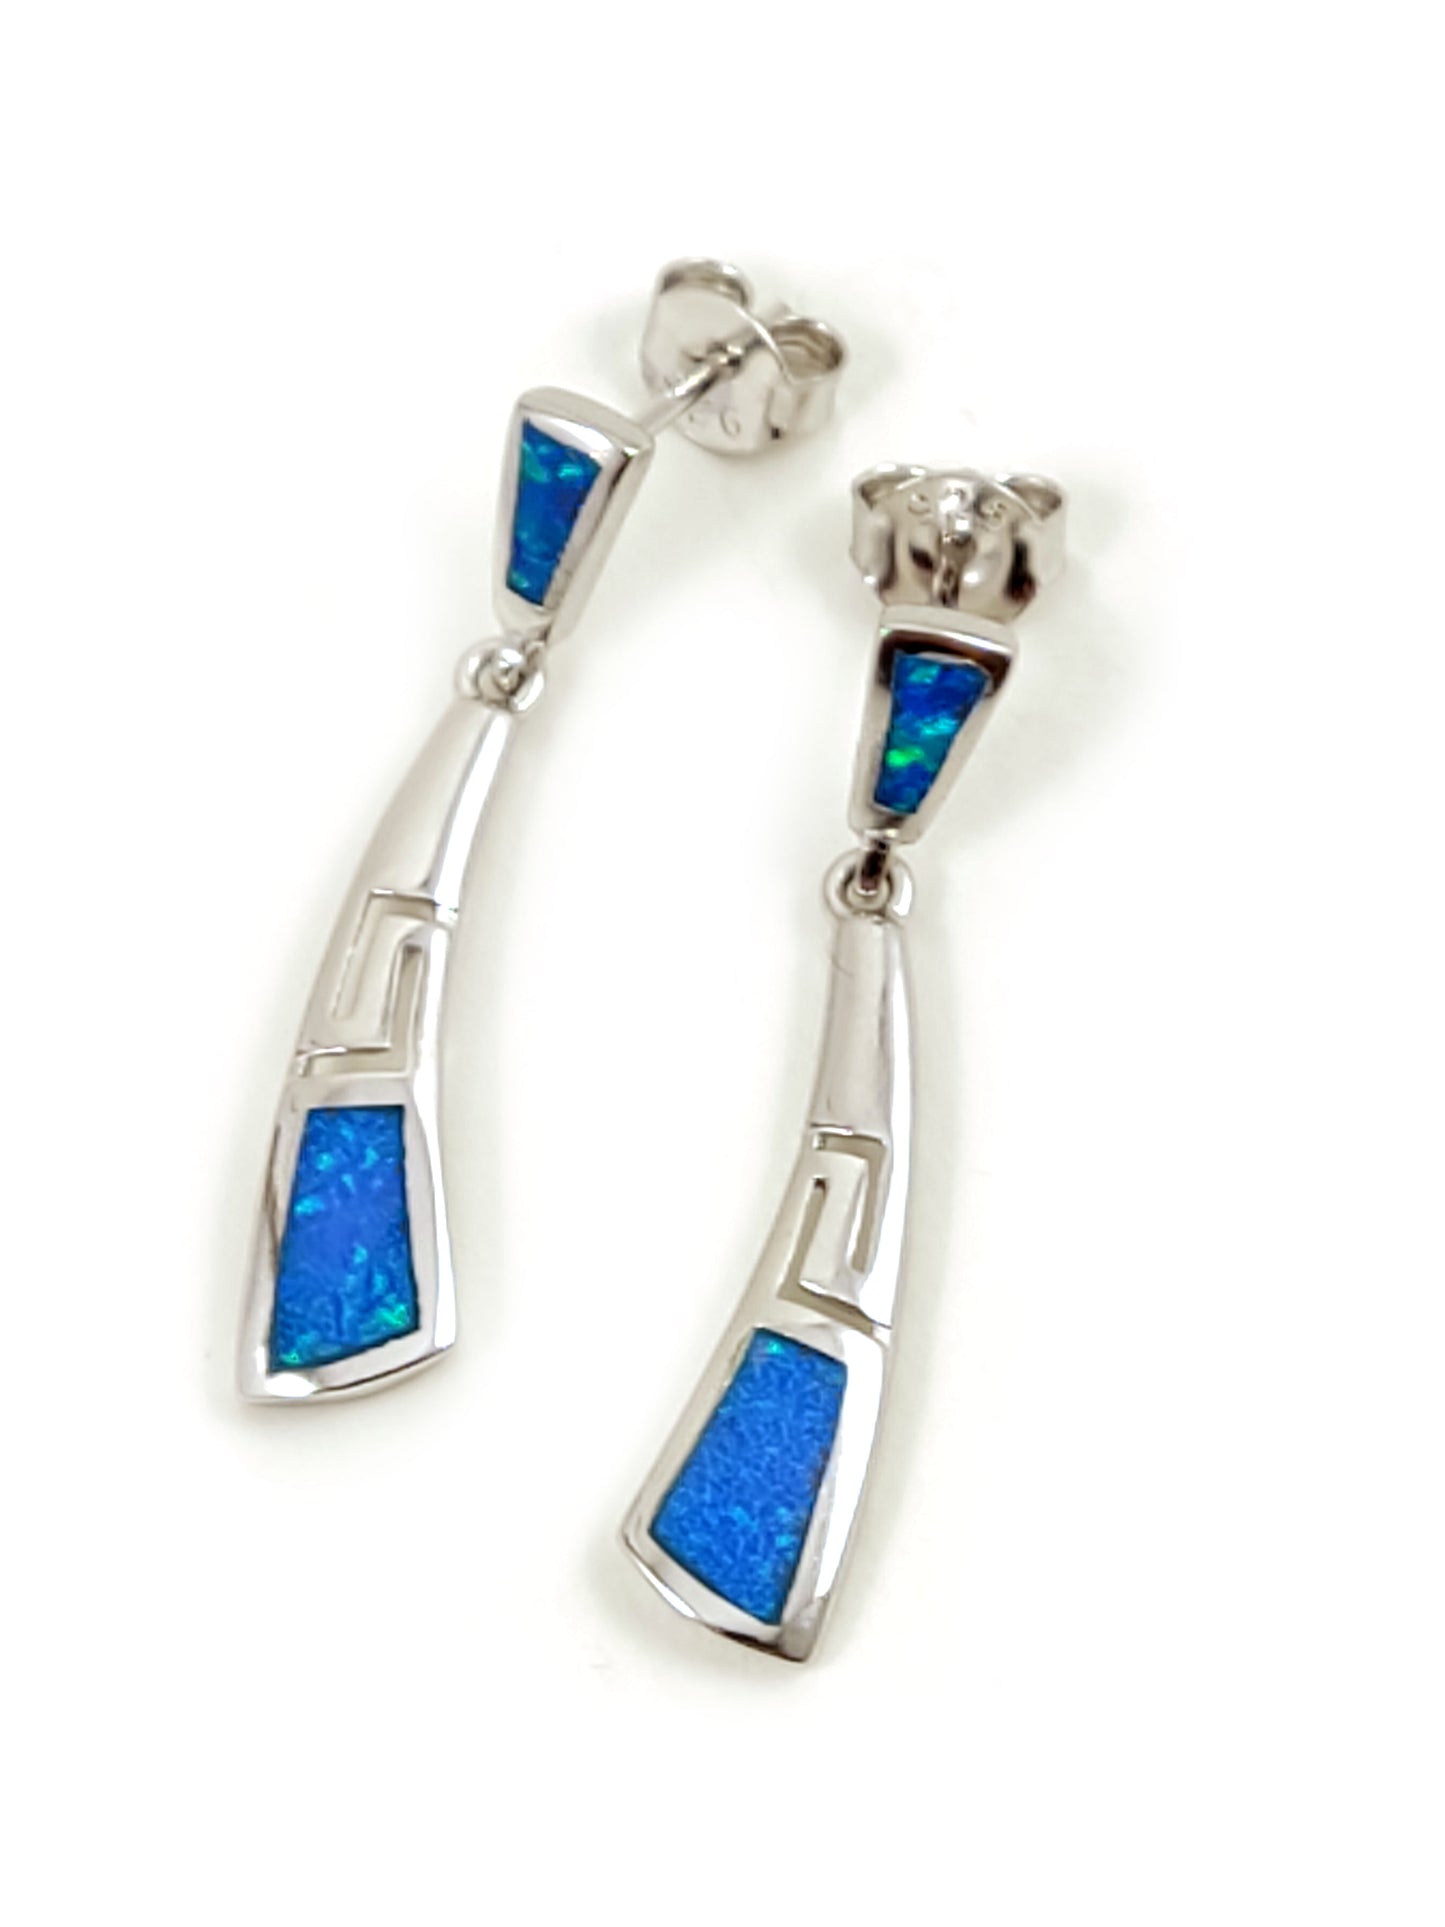 Petites boucles d'oreilles incurvées en argent grec et opale bleue